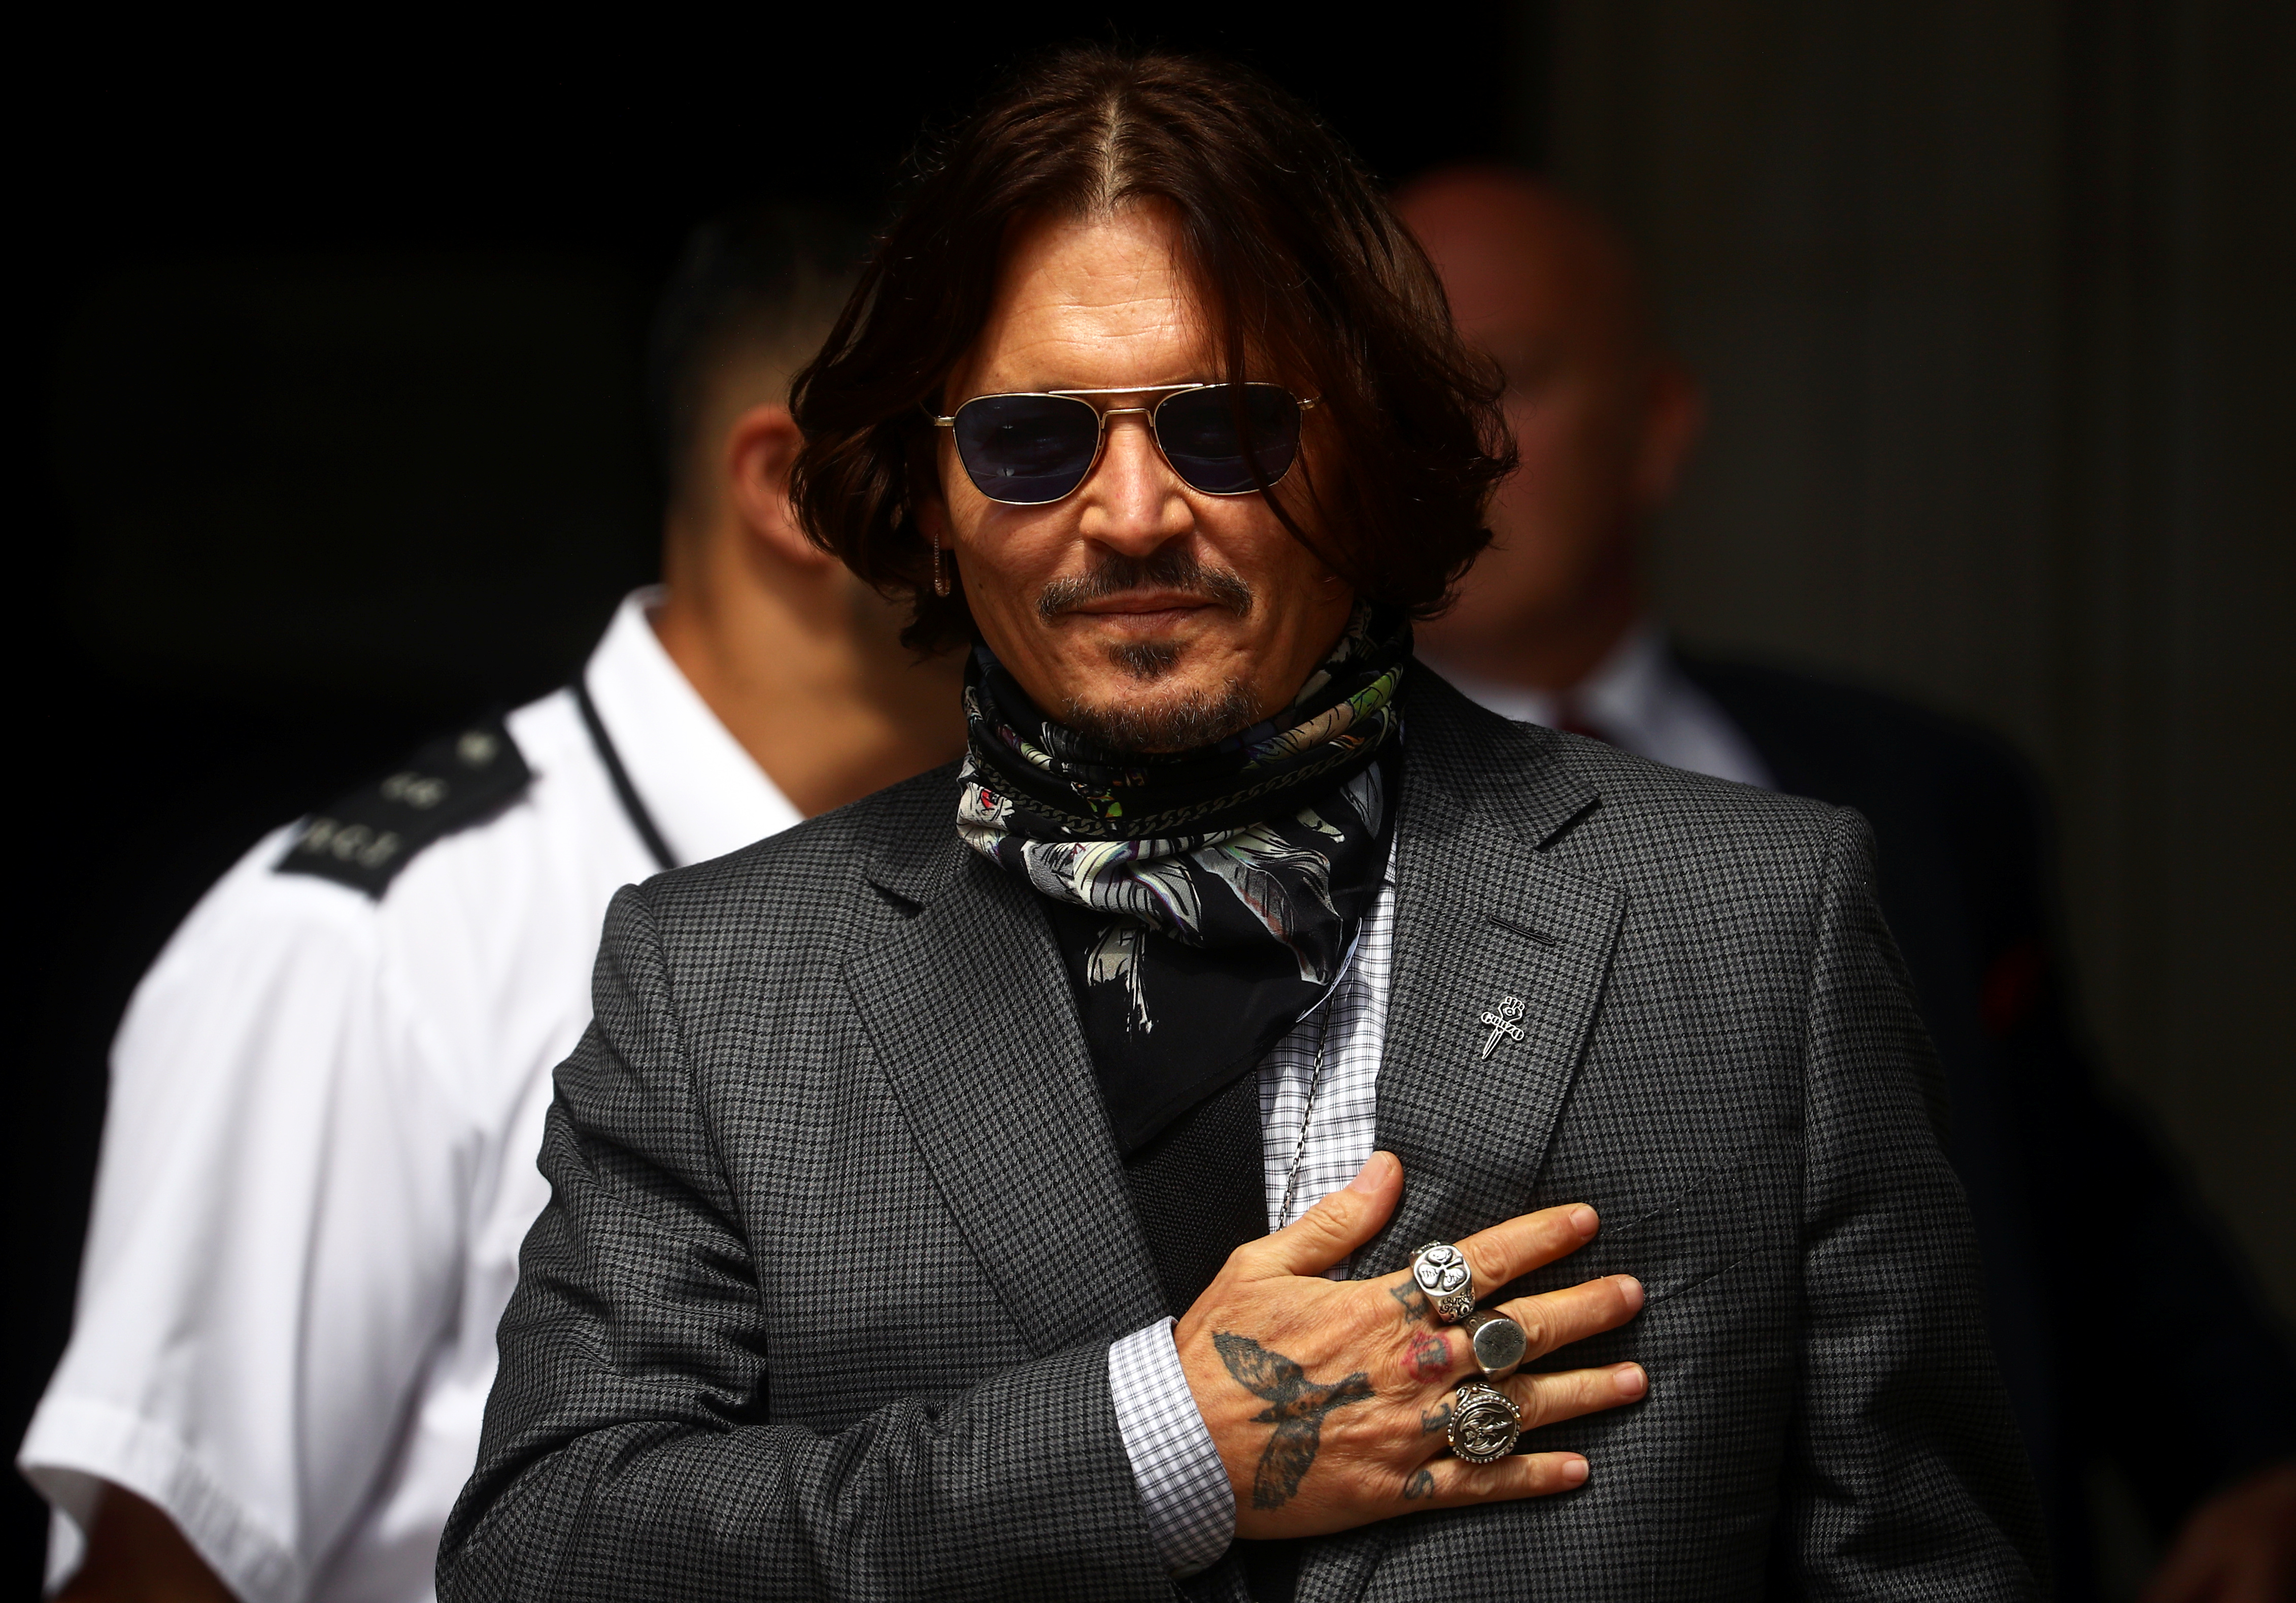 “Está loco, mamá”: Heard compartió temores sobre Johnny Depp en 2013